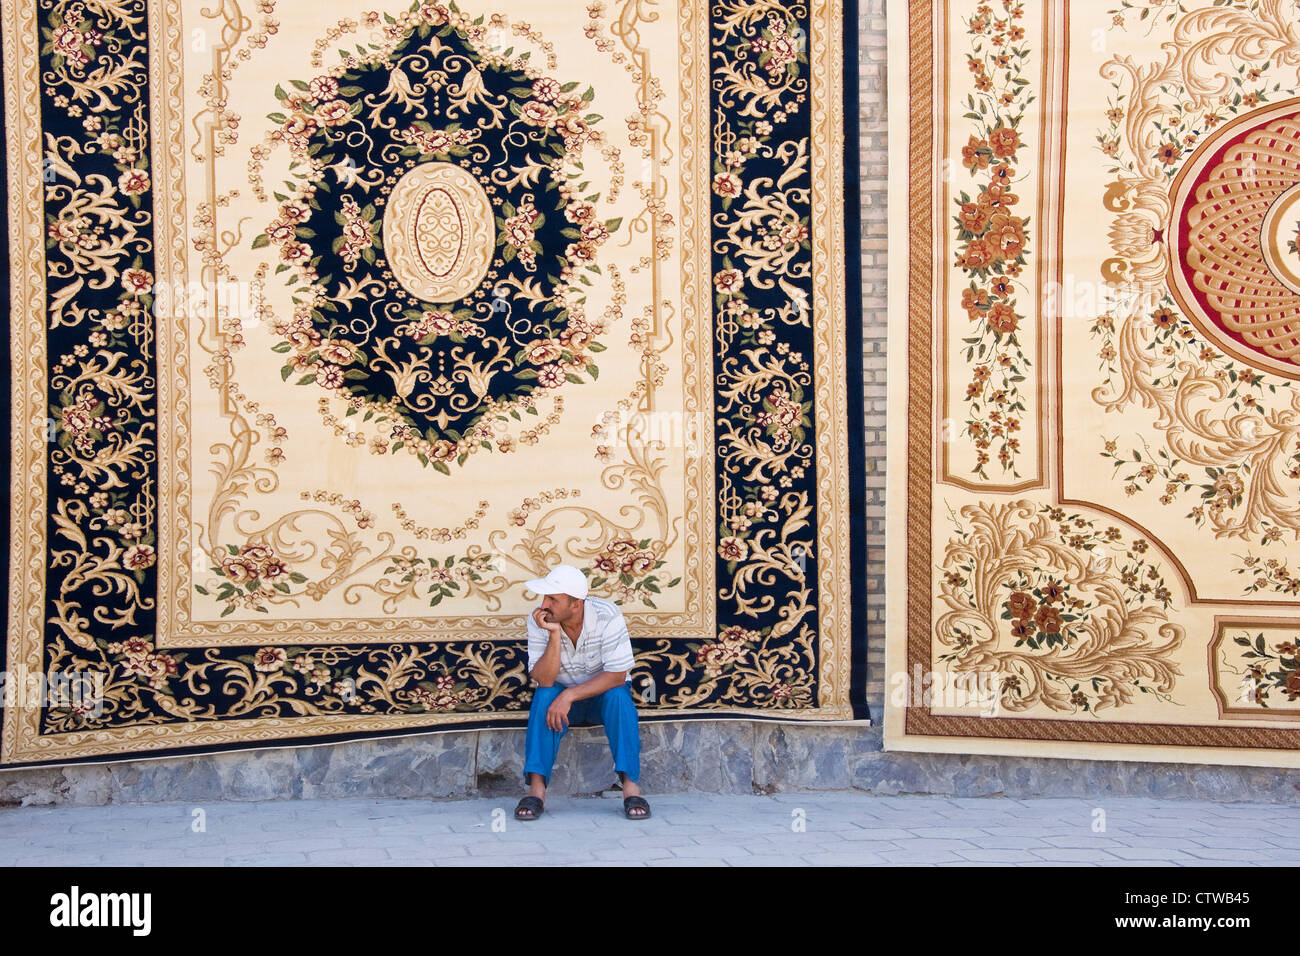 Uzbekistan, Bukhara, Carpets shop Stock Photo